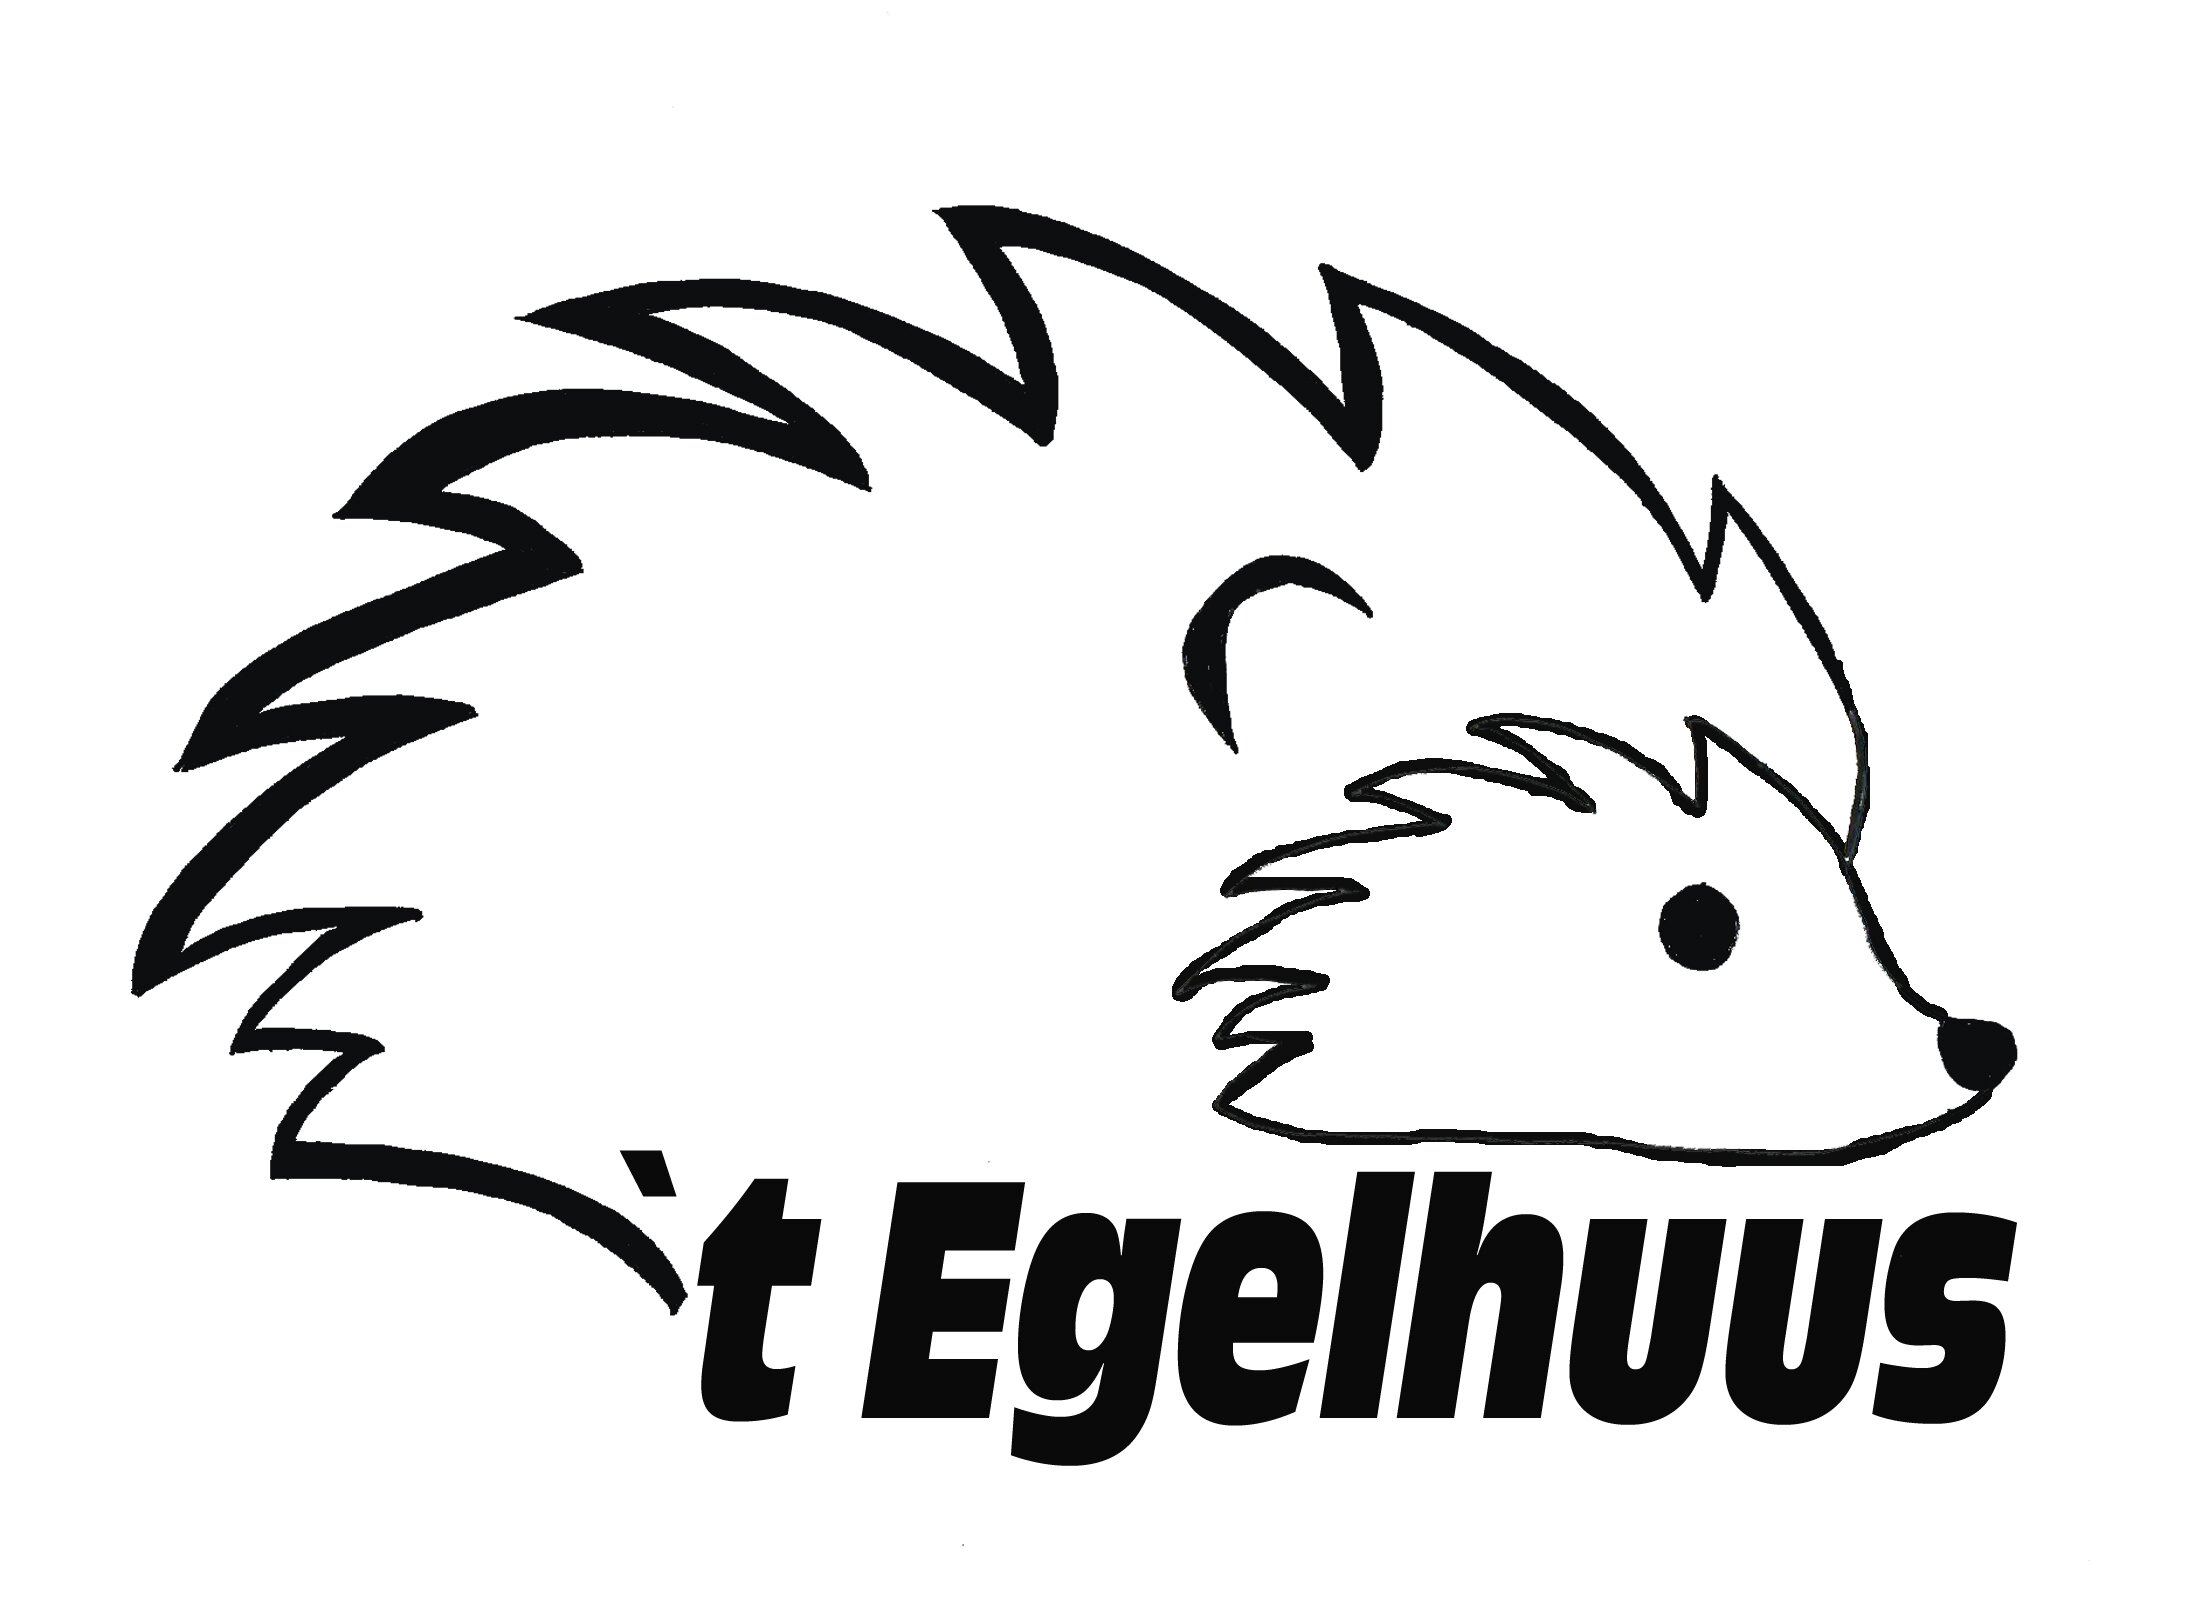 Stichting 't Egelhuus